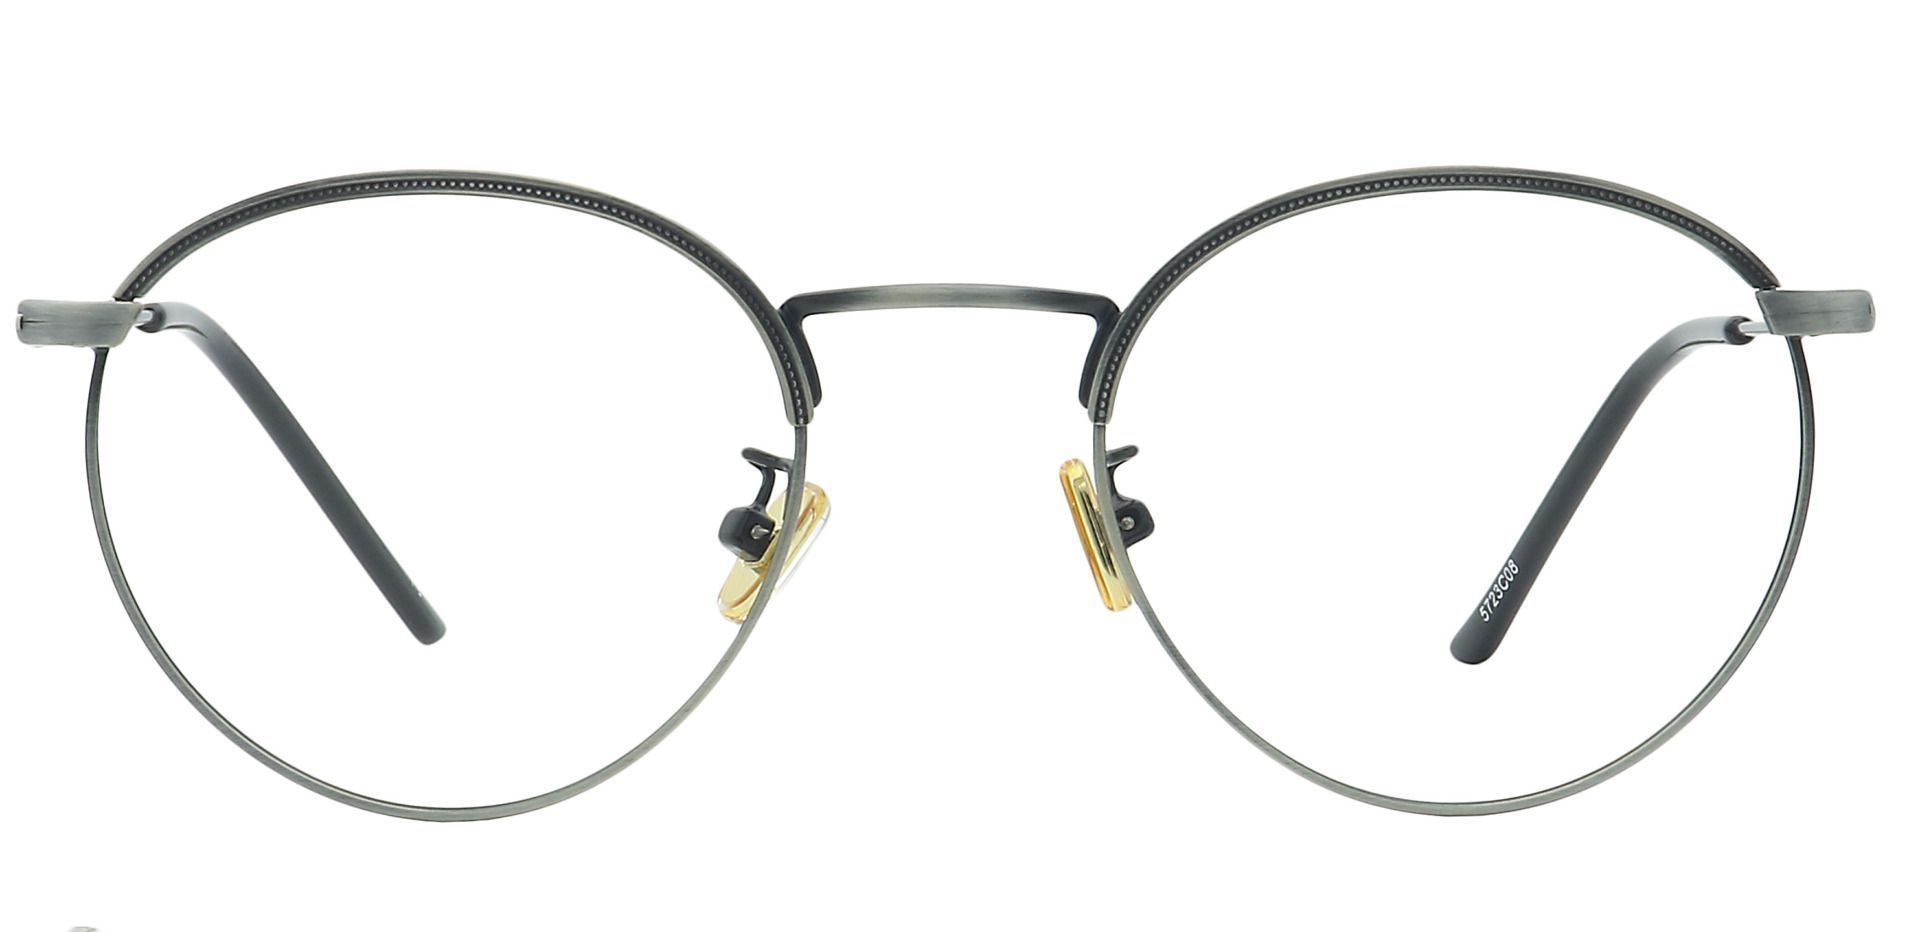 Cooper Oval Prescription Glasses - Gray